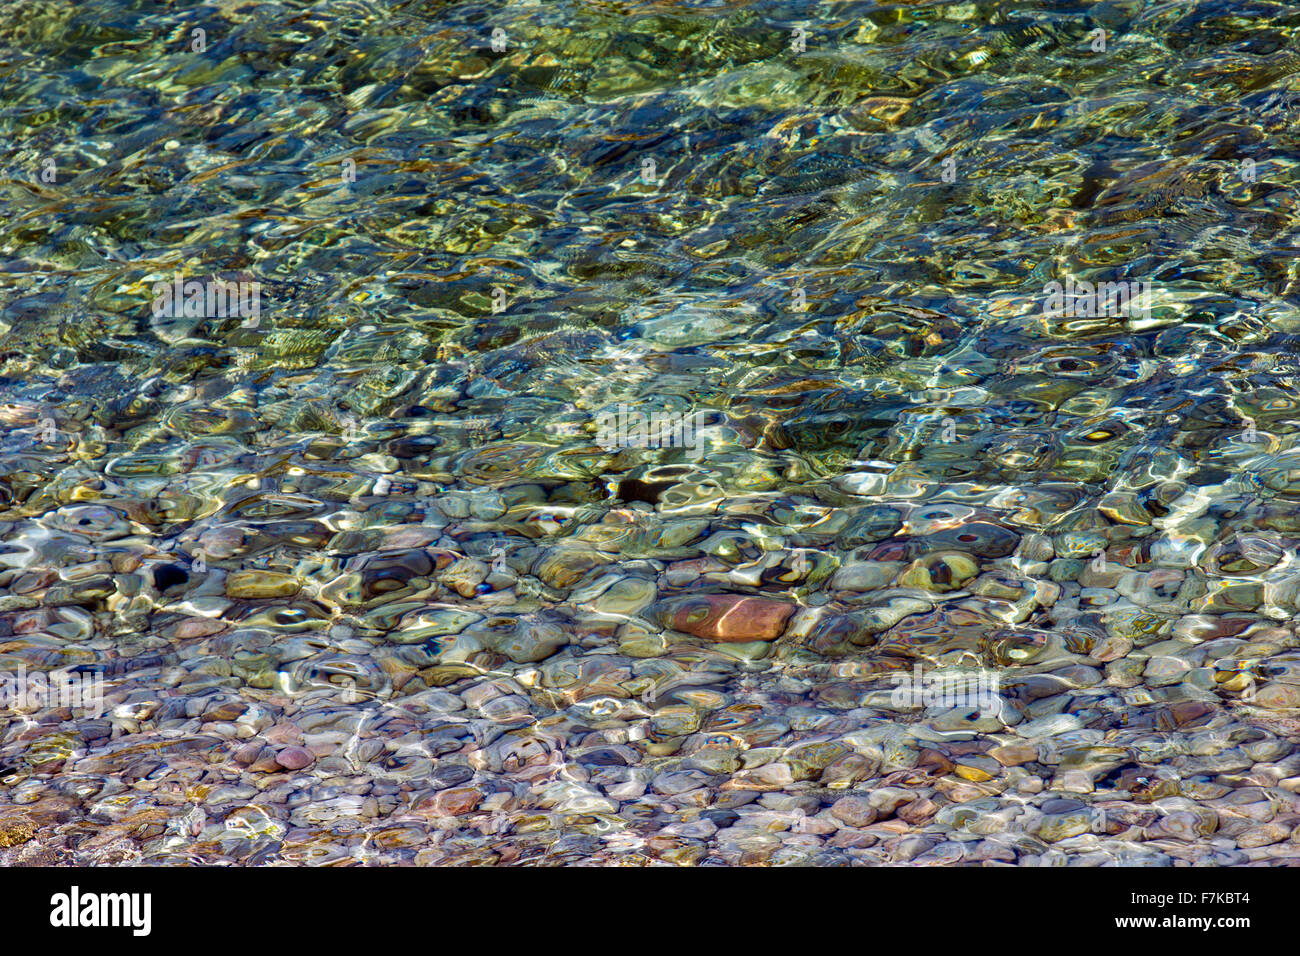 Port de Soller water clarity with stones Stock Photo